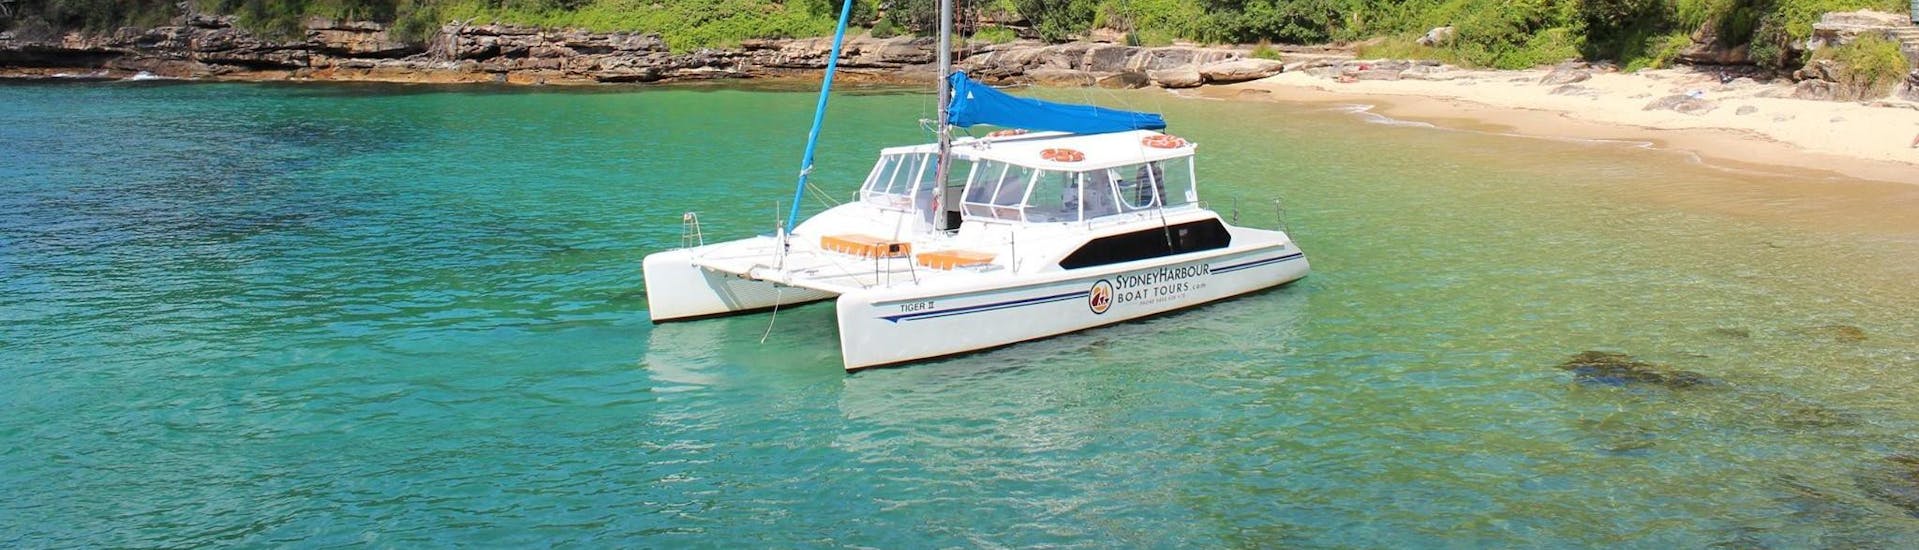 Gita privata in barca a Sydney Harbour con visita turistica.